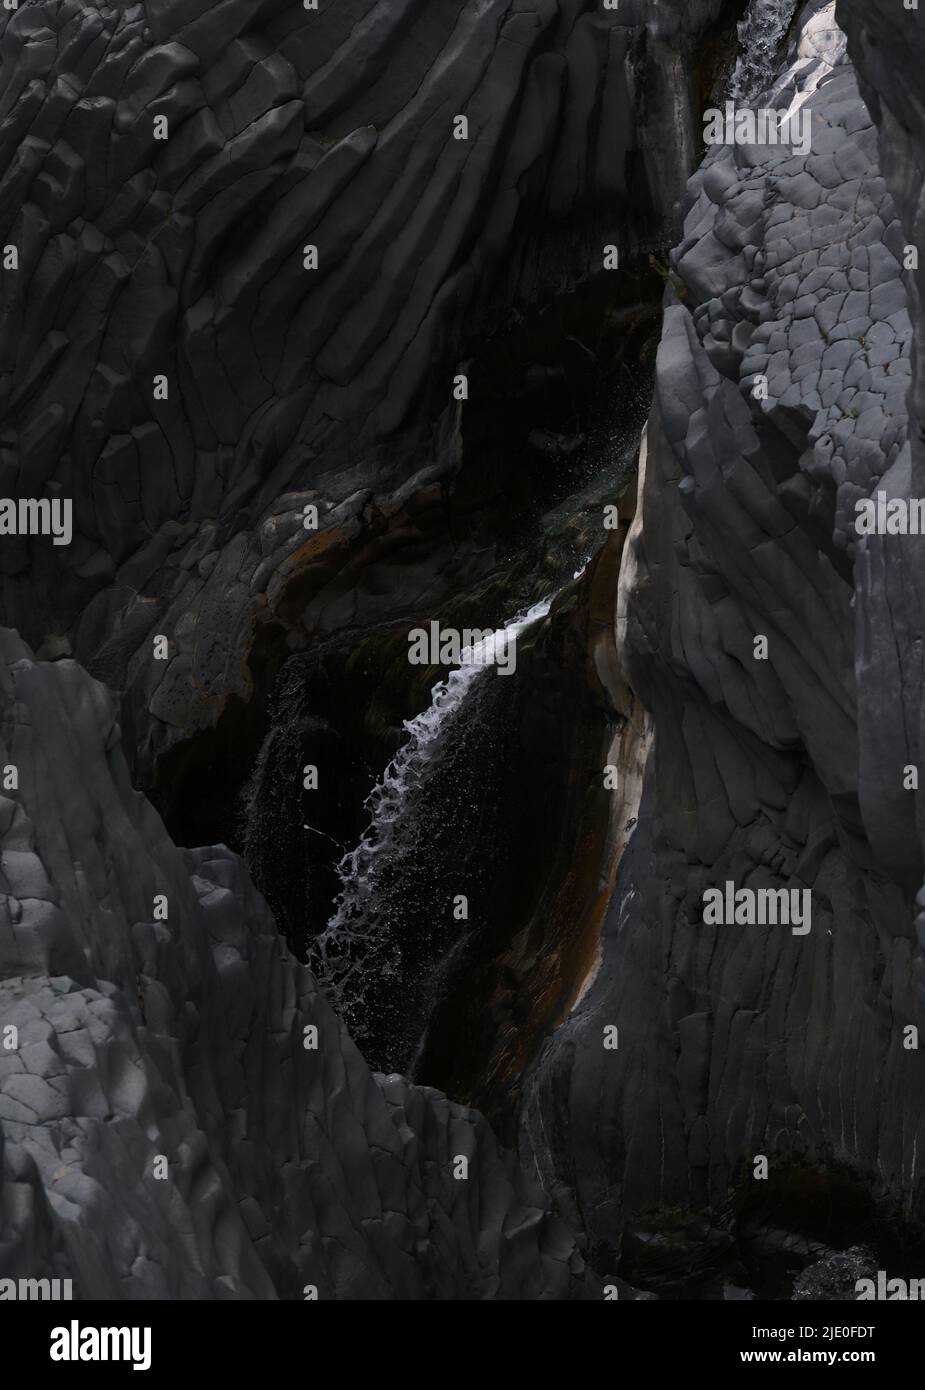 Il Tumulo di Vulcano, tumulto vulcanico, roccia lavica nel parco fluviale Gole dell'Alcantara, Gola dell'Alcantara, Sicilia, Italia, Europa Foto Stock